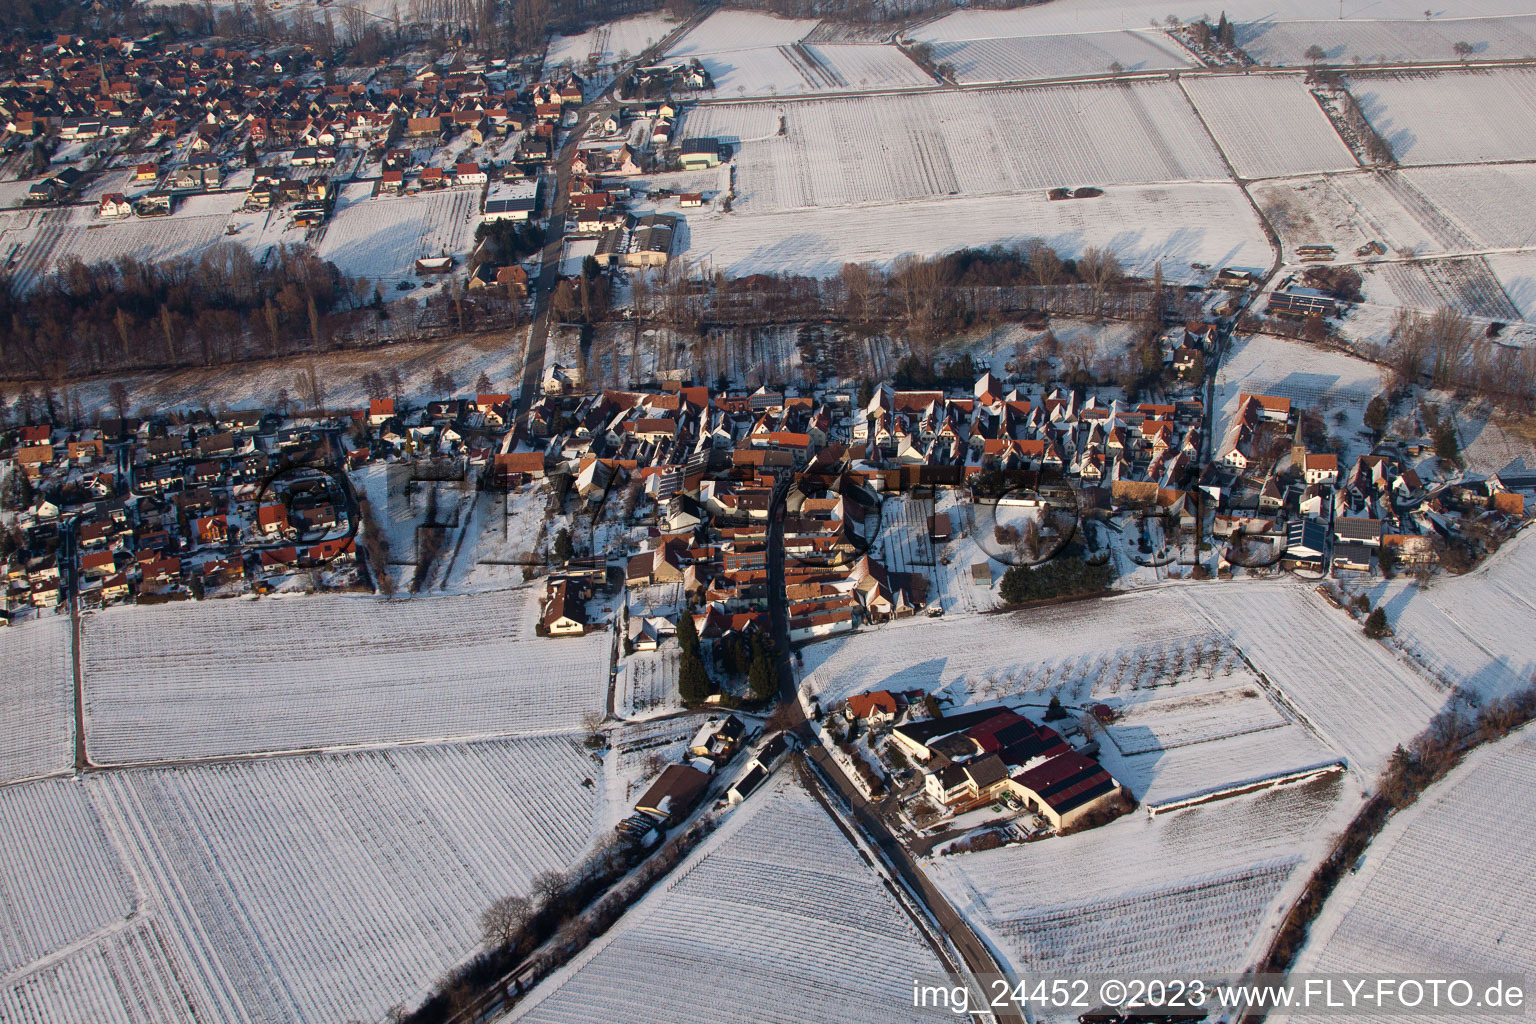 In winter in the district Klingen in Heuchelheim-Klingen in the state Rhineland-Palatinate, Germany from above